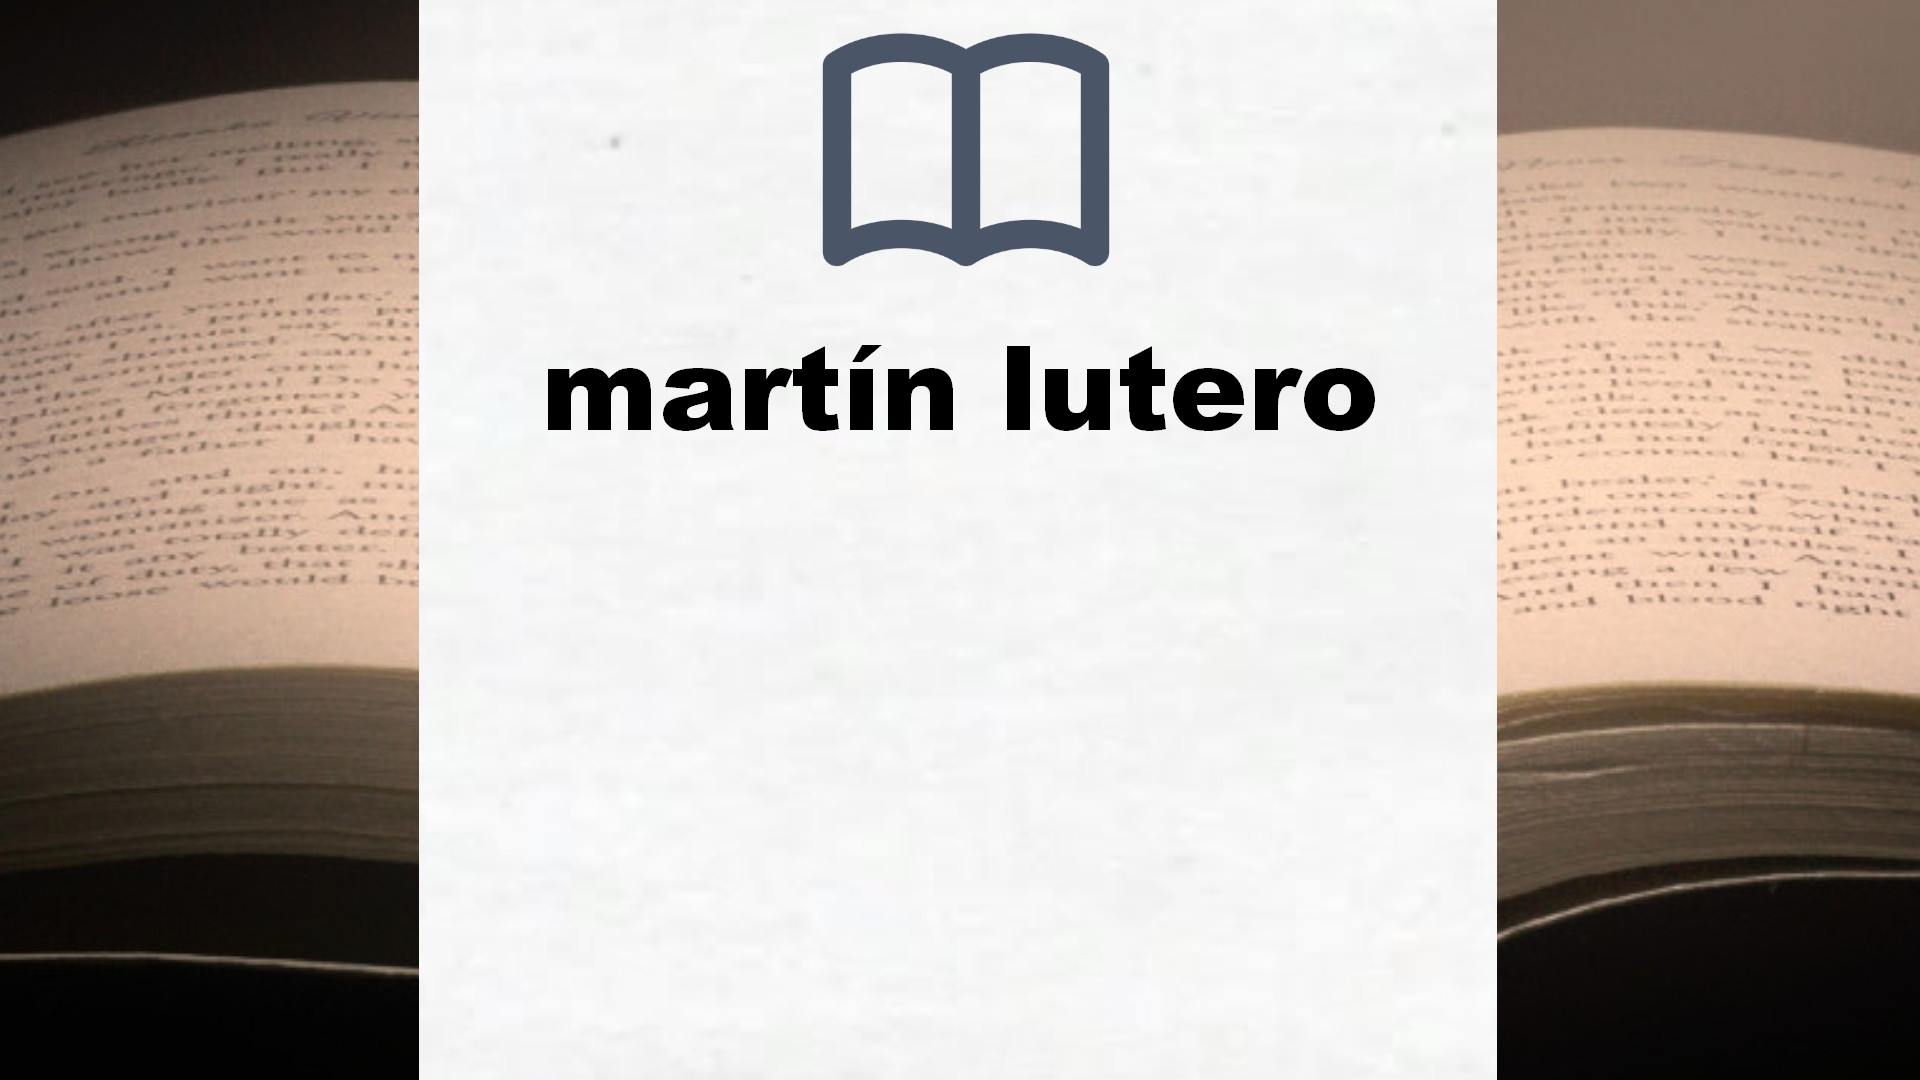 Libros sobre martín lutero